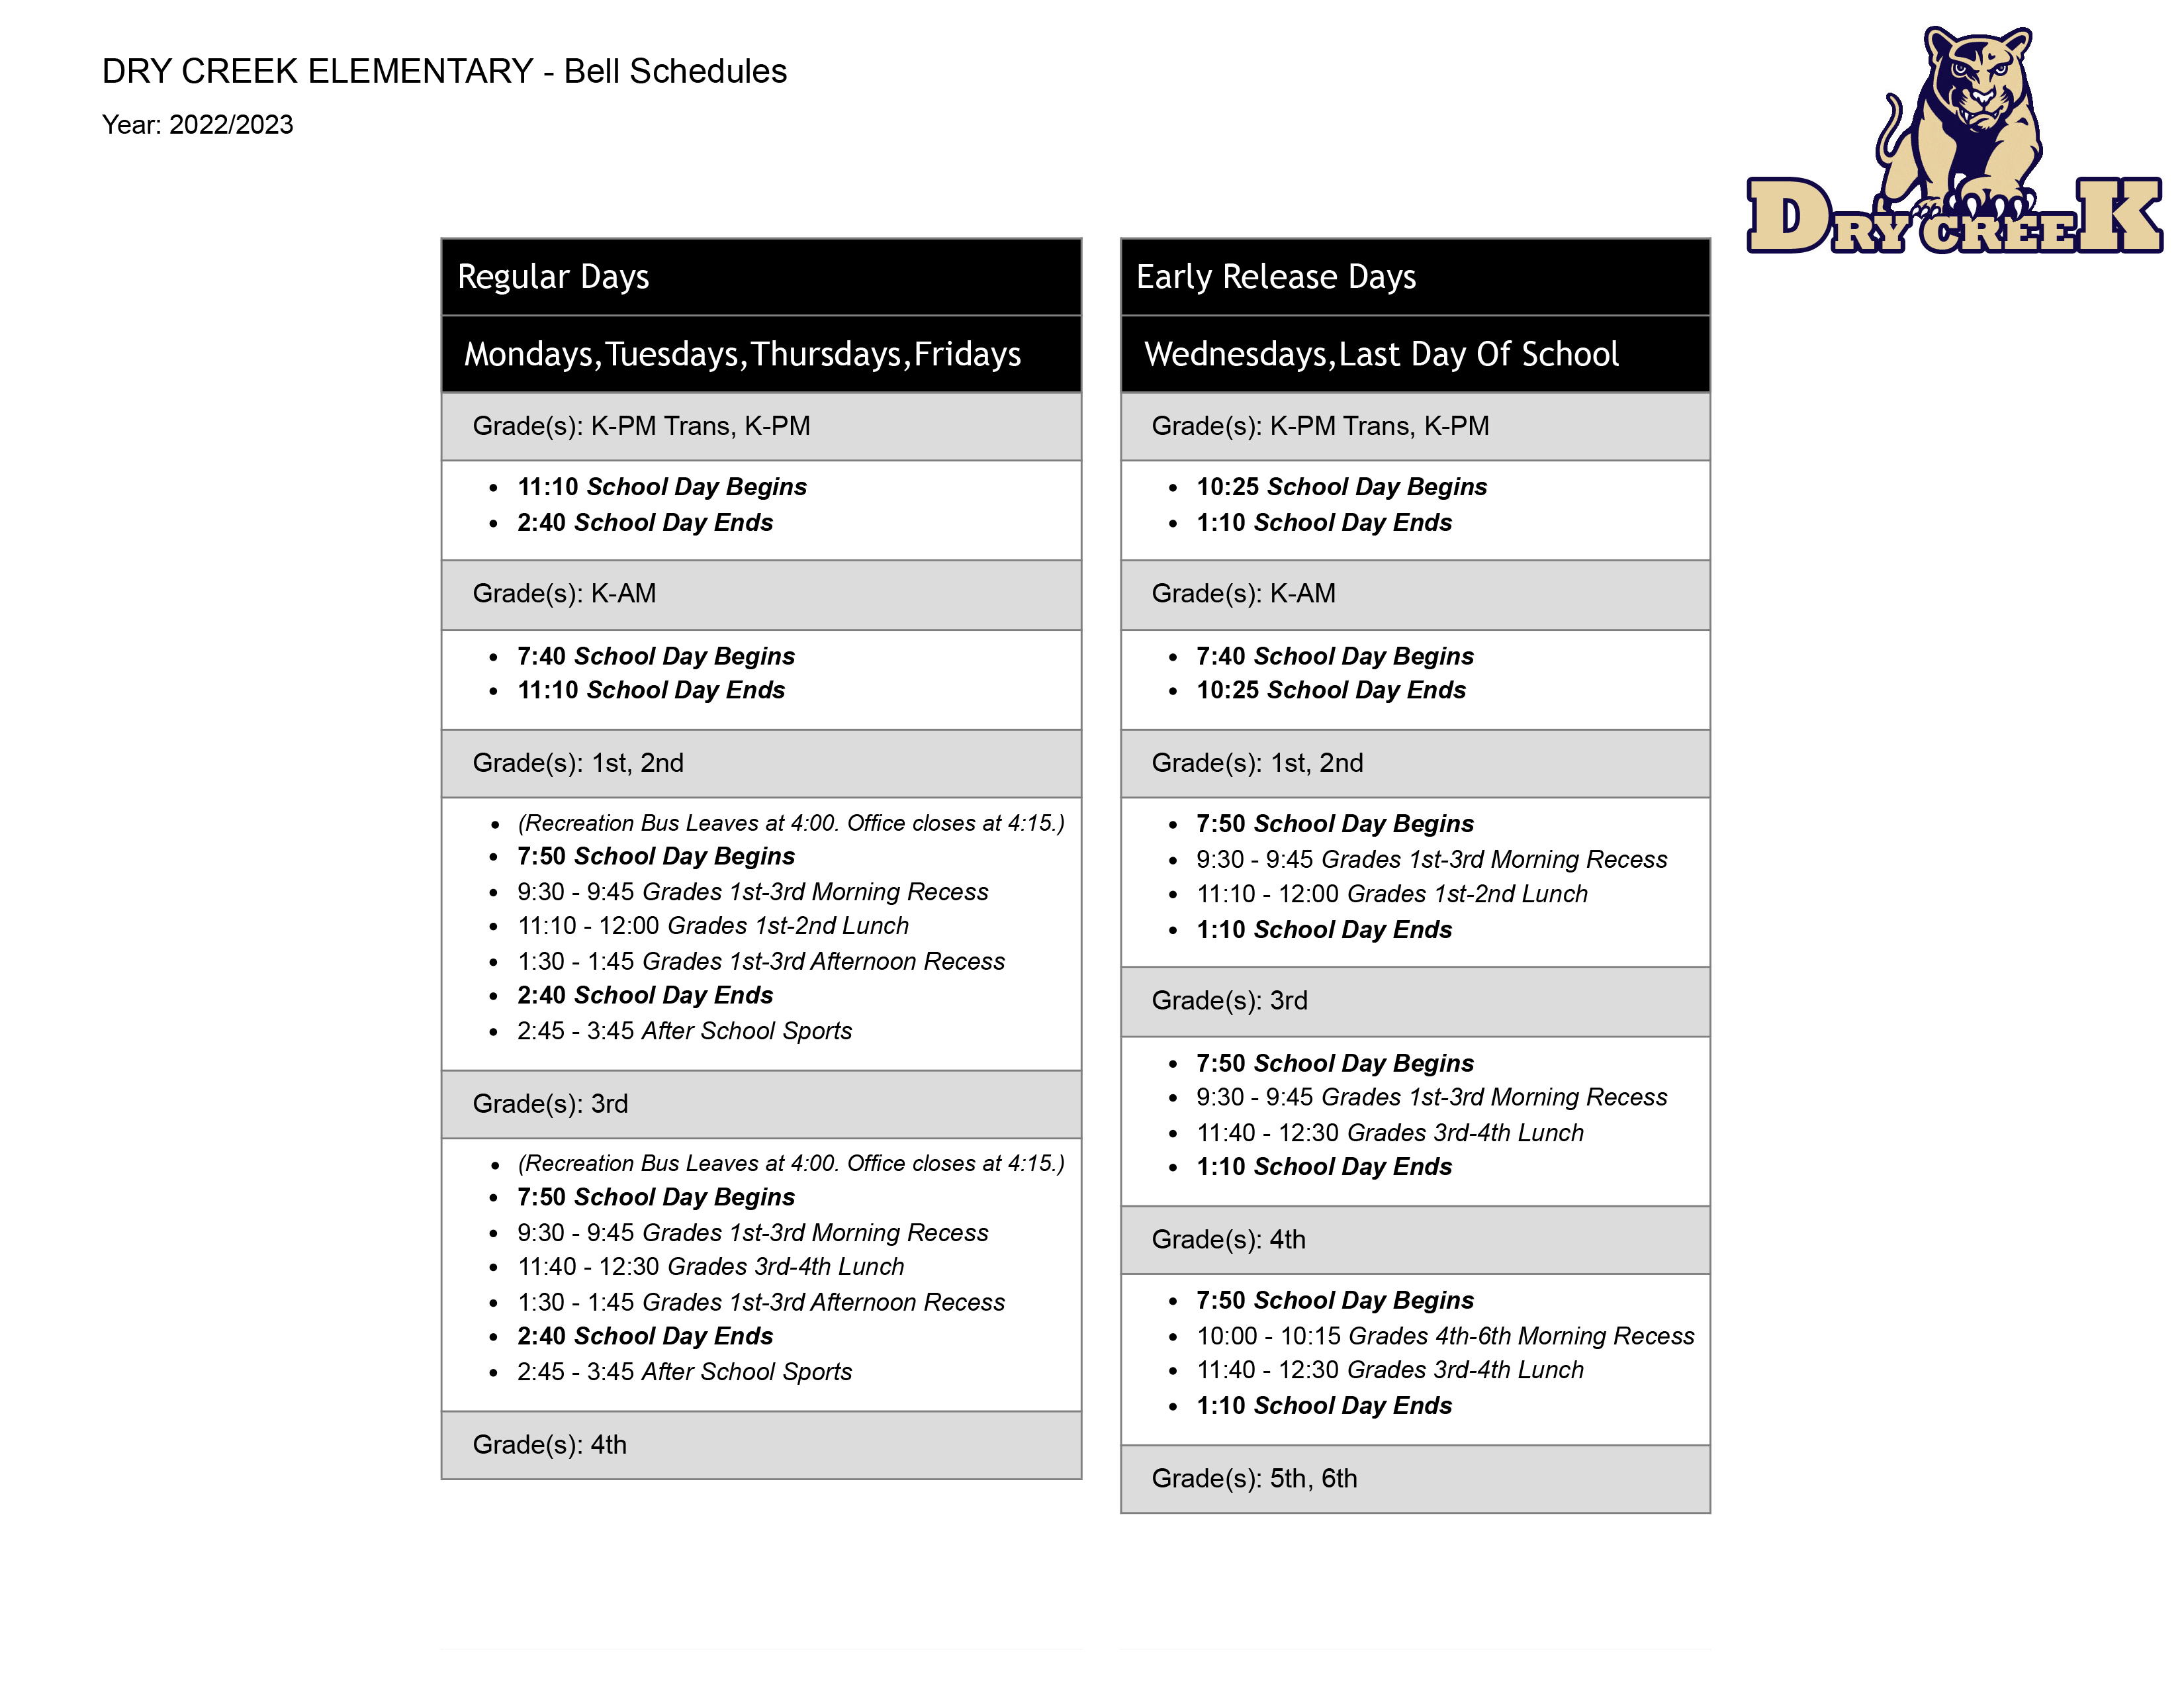 Image is of School Bell Schedule